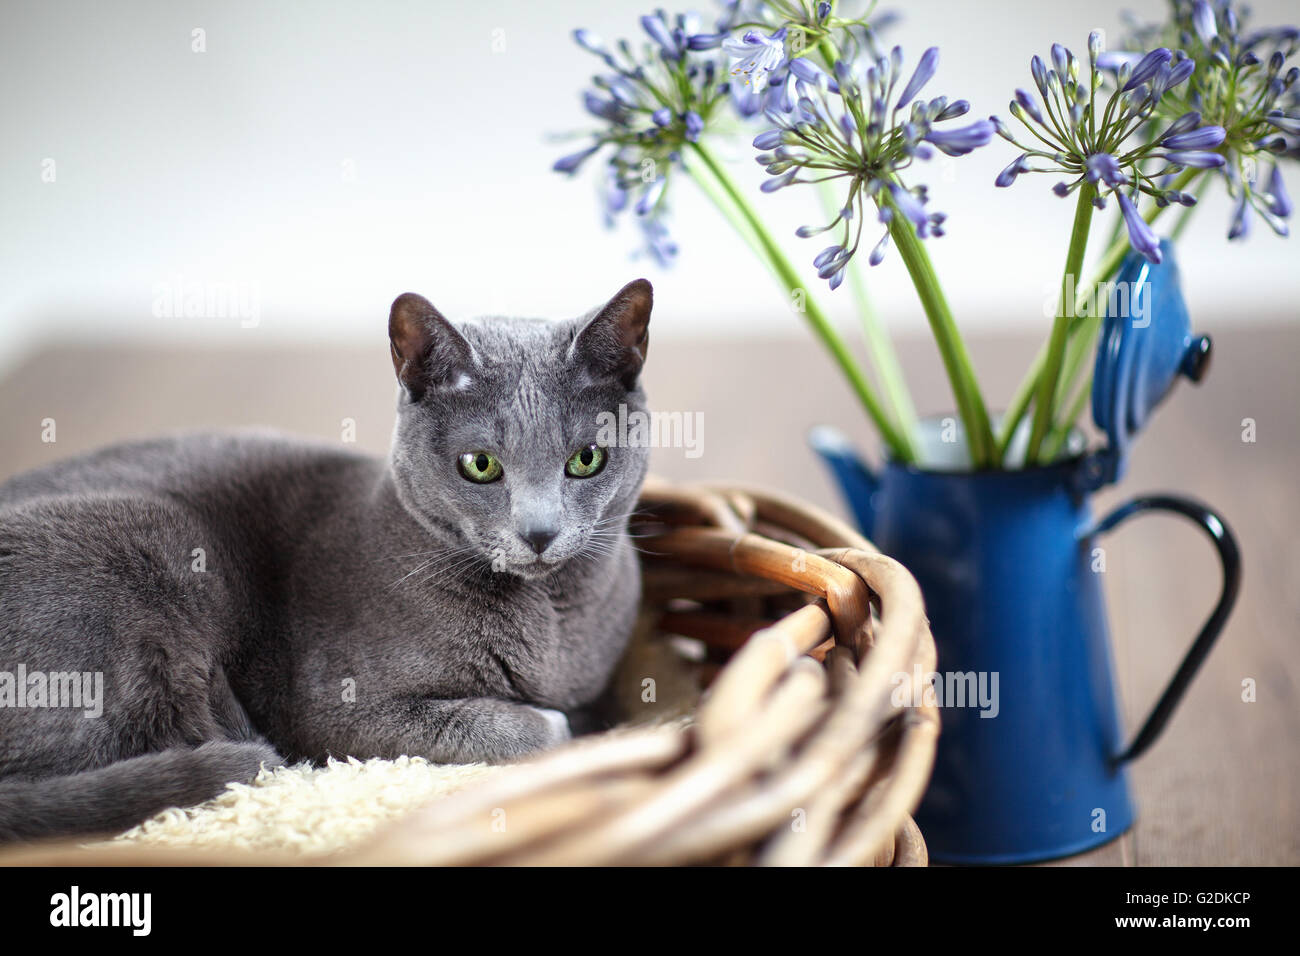 Russisch Blau Rassekatze entspannt en mit Weidenkorb Blumen Foto de stock